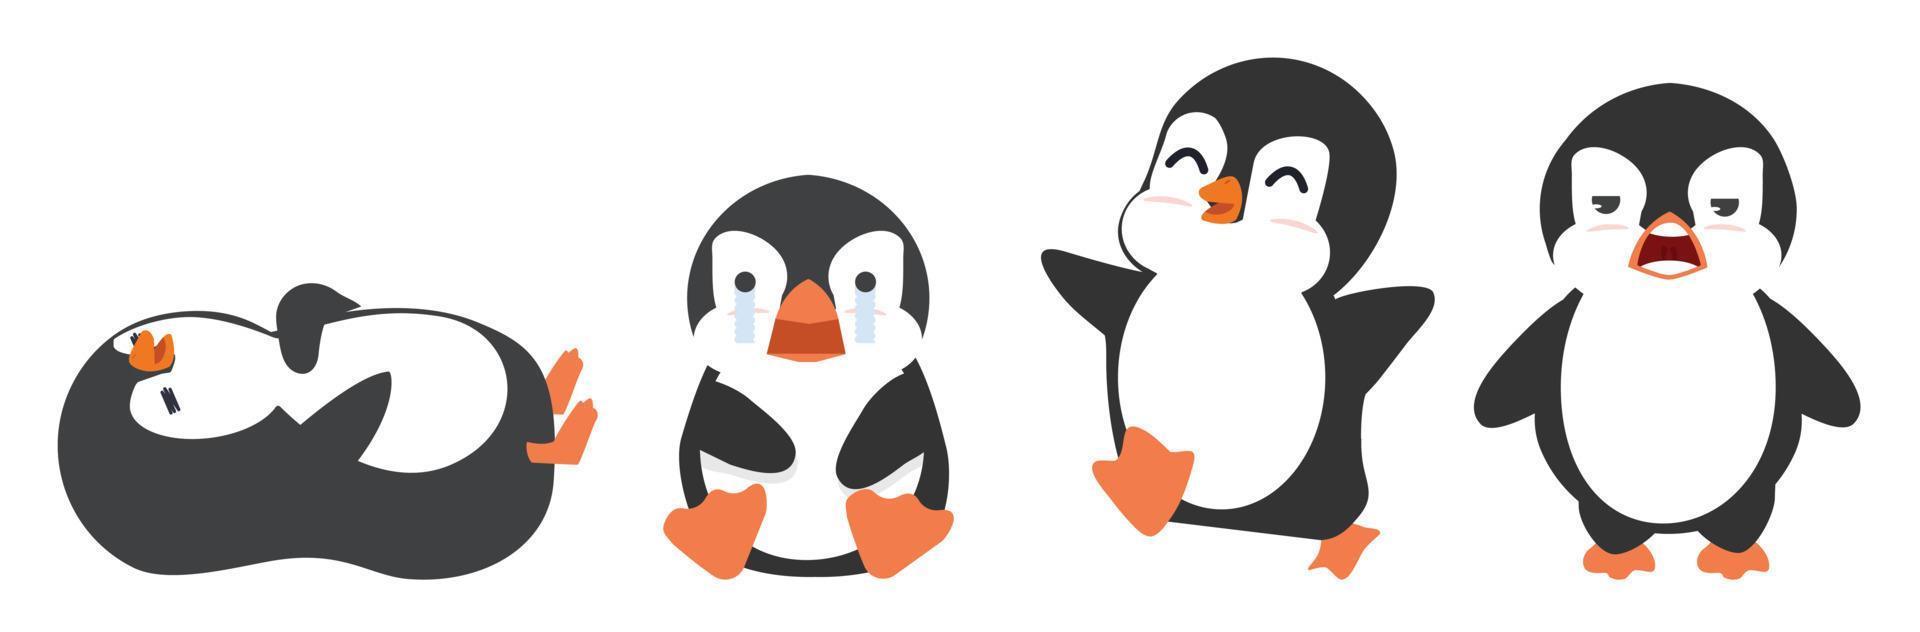 lindo pequeño pingüino vector aislado en blanco